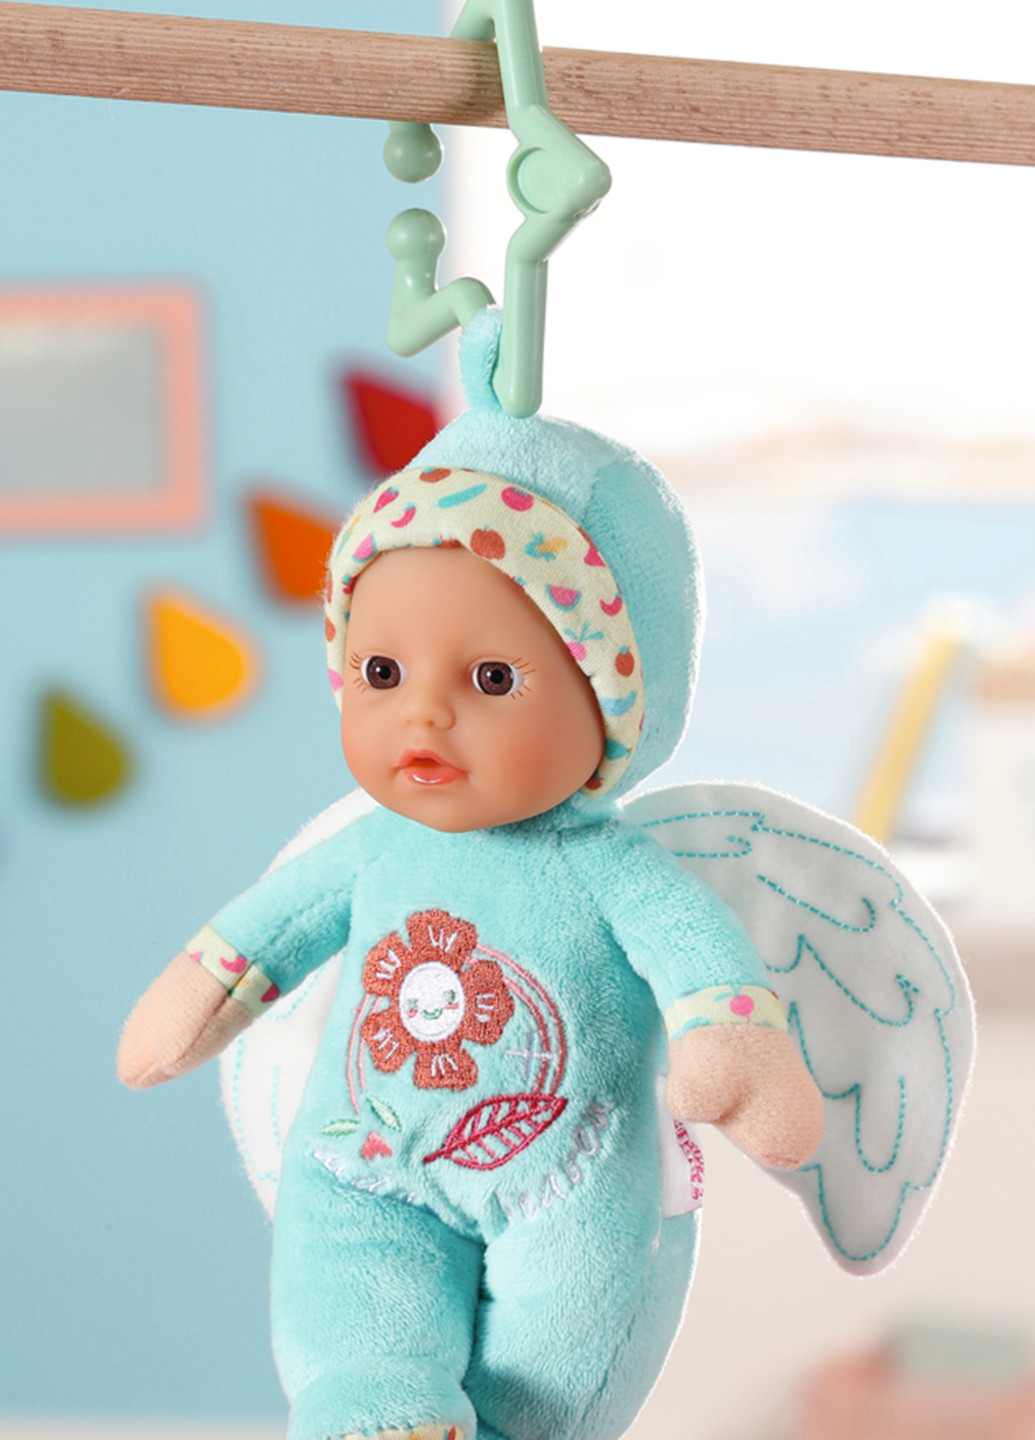 Кукла Голубой ангелочек, 18 см BABY born (261249162)